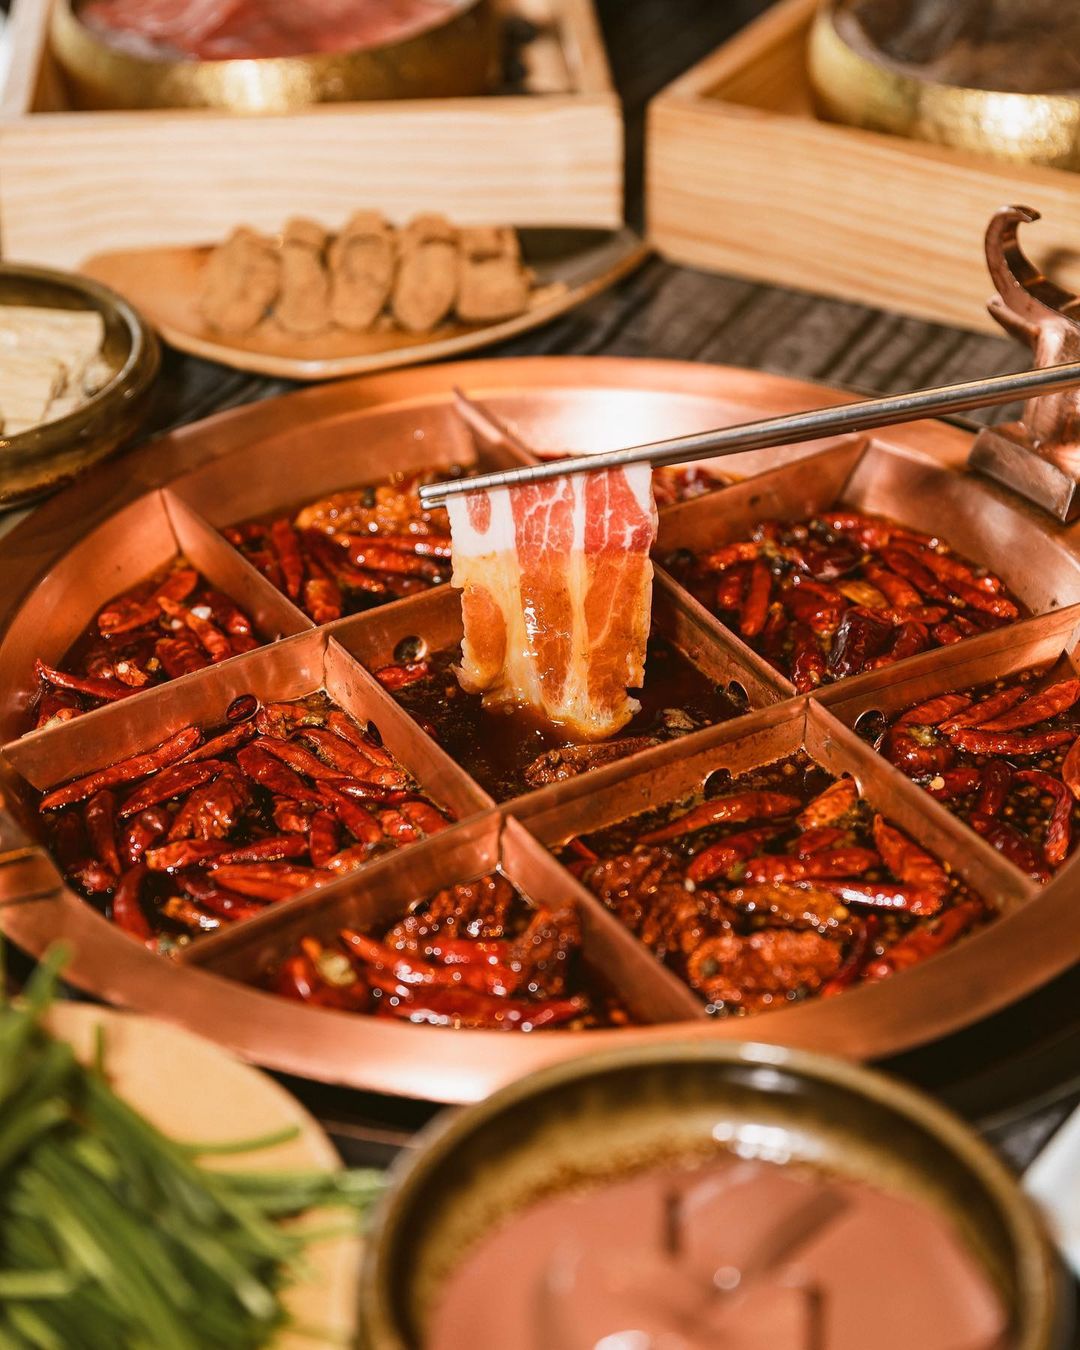 台北火鍋推薦，「麻辣45」主打重慶式口味麻辣鍋，湯頭用和牛油加上多種香辛料熬煮而成，最特別的是九宮格的鍋 酒宮格